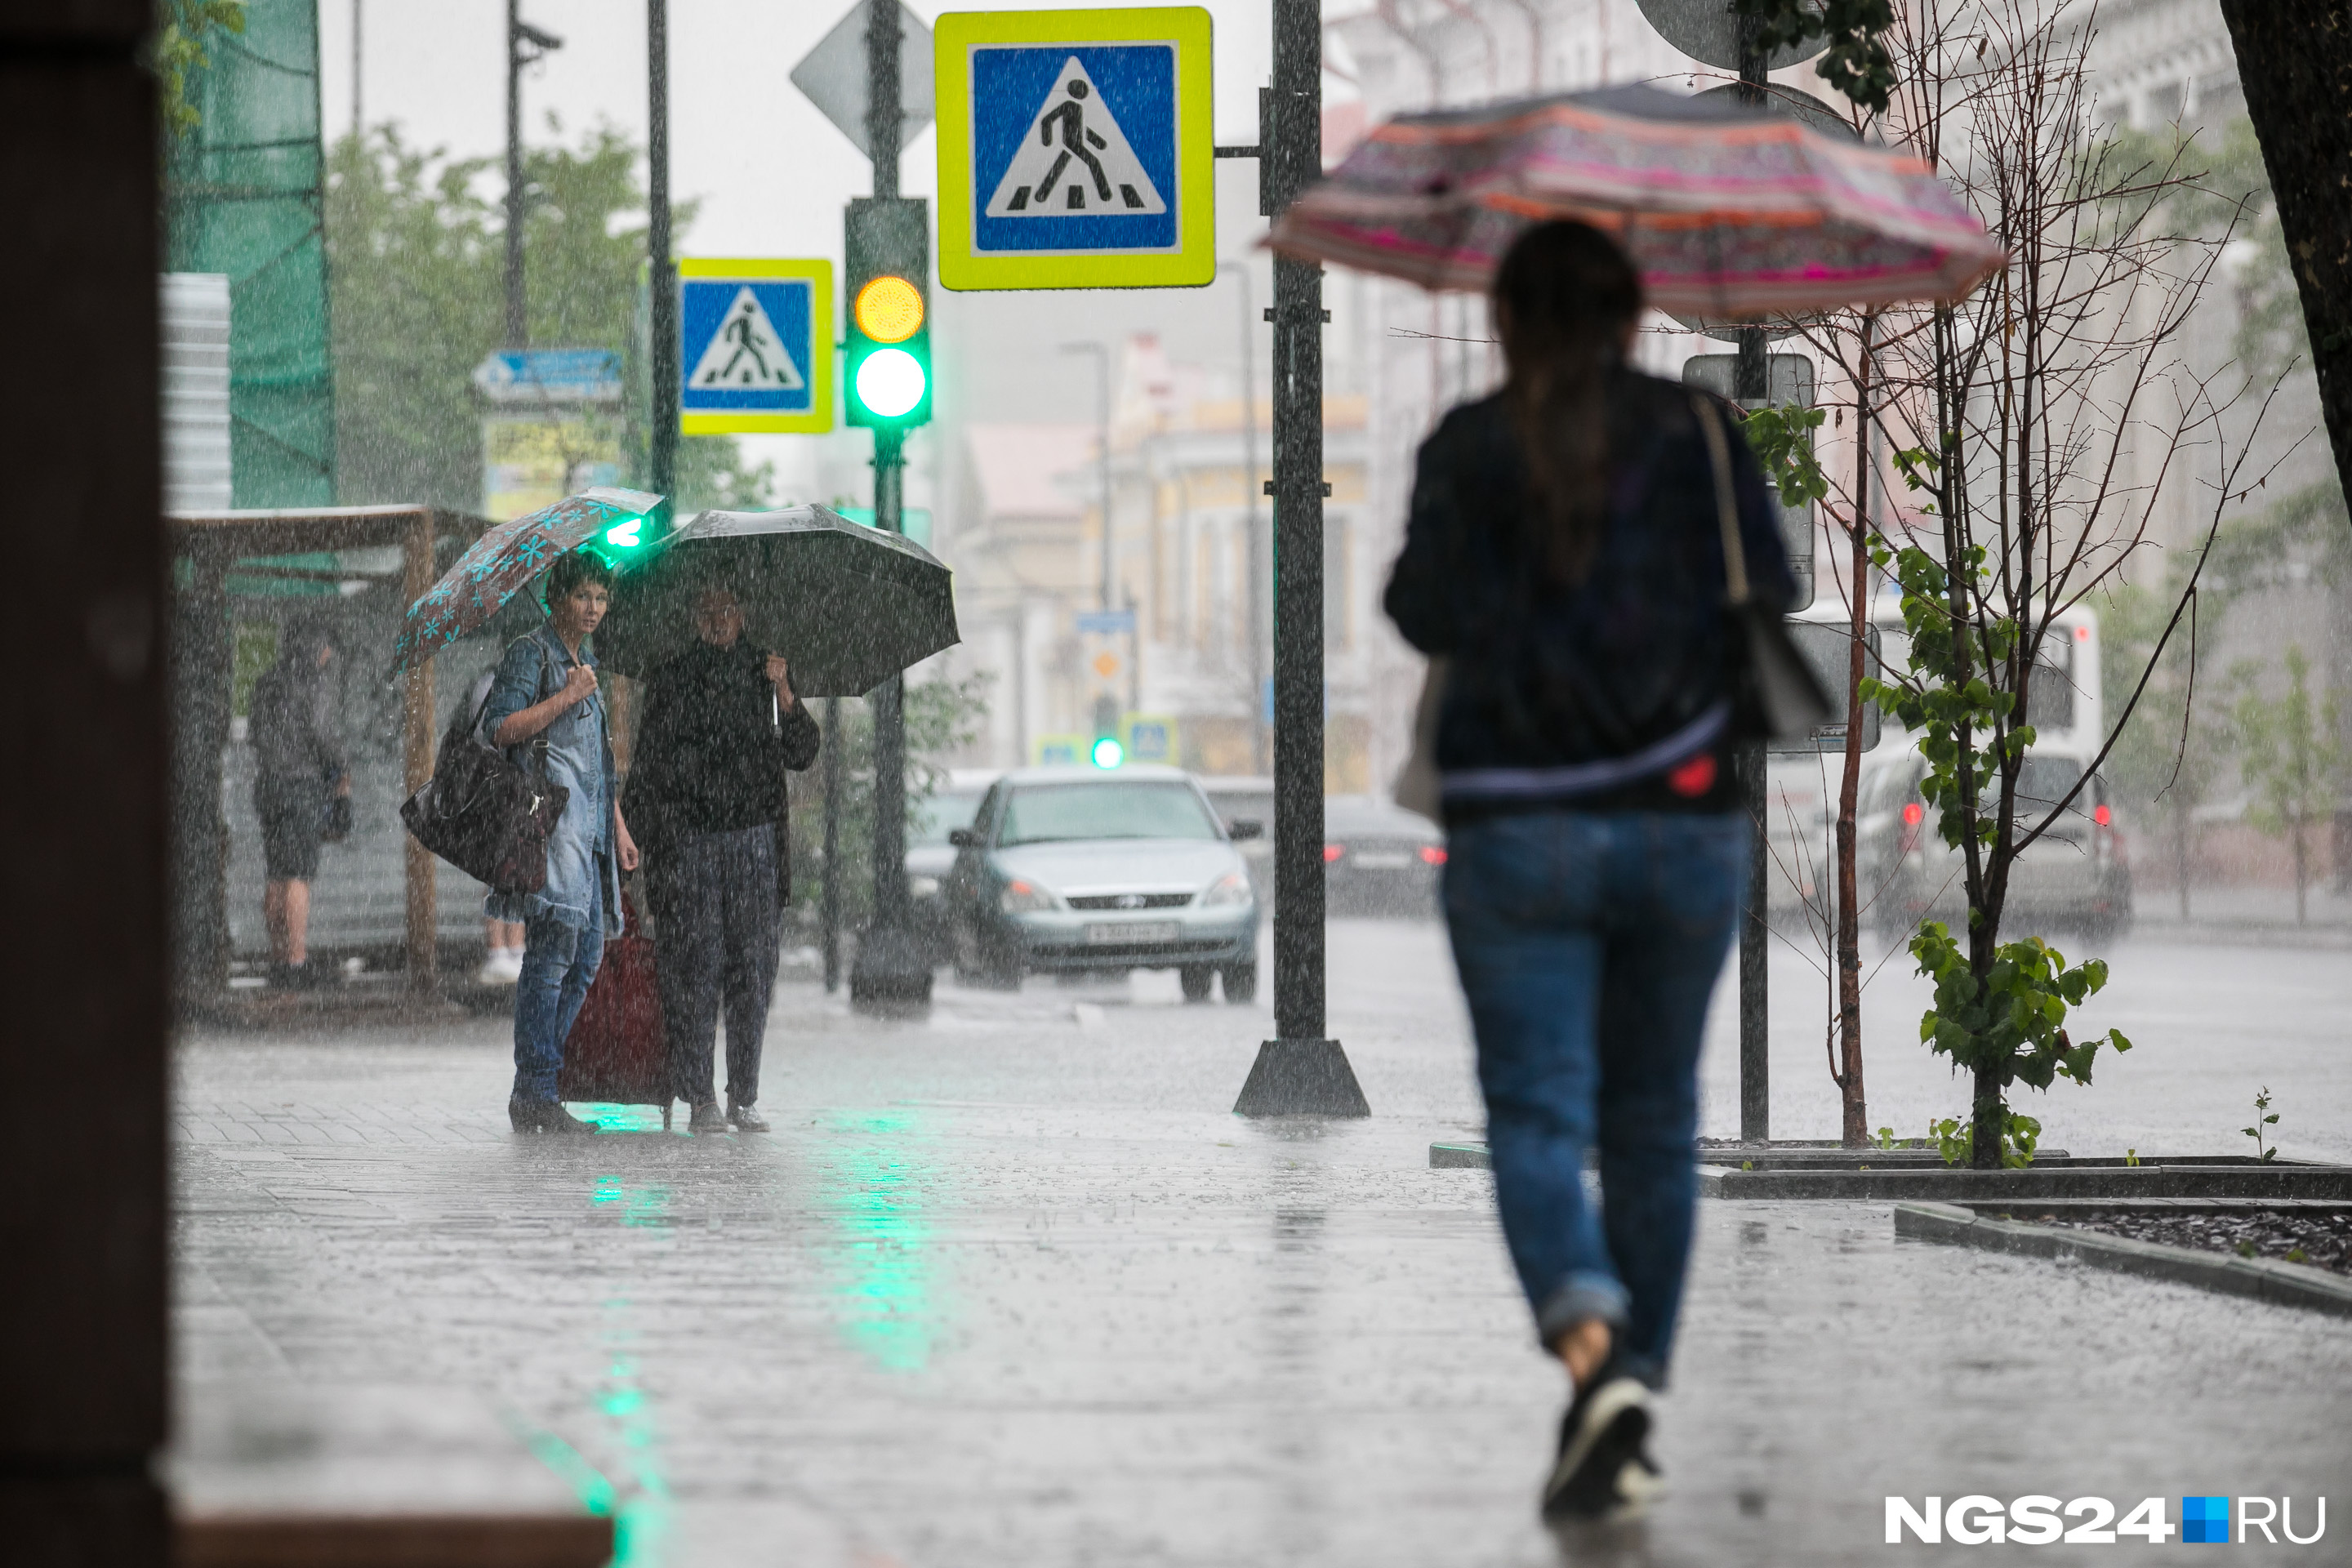 На Красноярск надвигаются ливни, град и шторм. Уйдет ли духота из города?